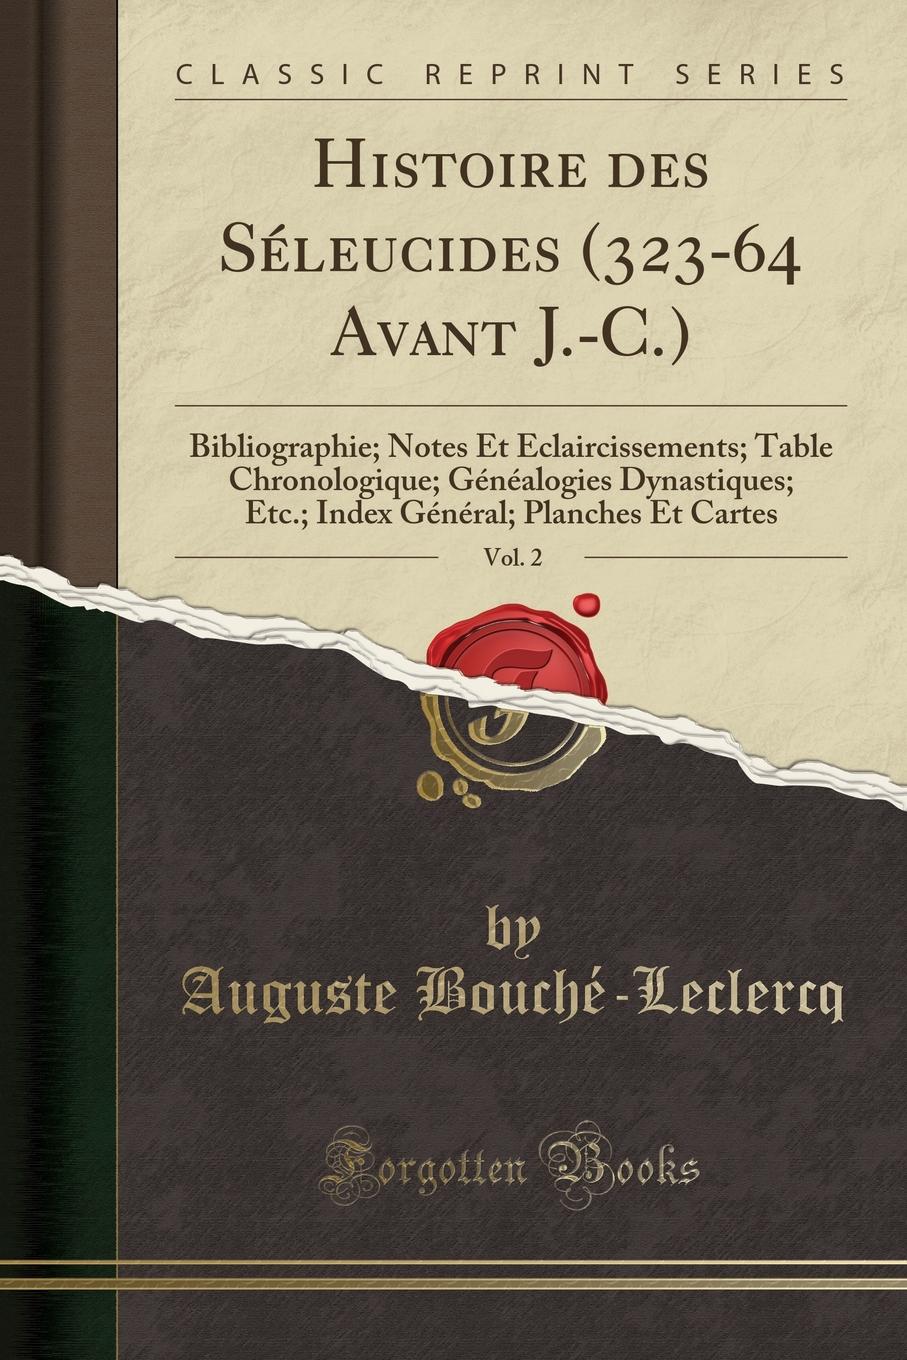 Auguste Bouché-Leclercq Histoire des Seleucides (323-64 Avant J.-C.), Vol. 2. Bibliographie; Notes Et Eclaircissements; Table Chronologique; Genealogies Dynastiques; Etc.; Index General; Planches Et Cartes (Classic Reprint)